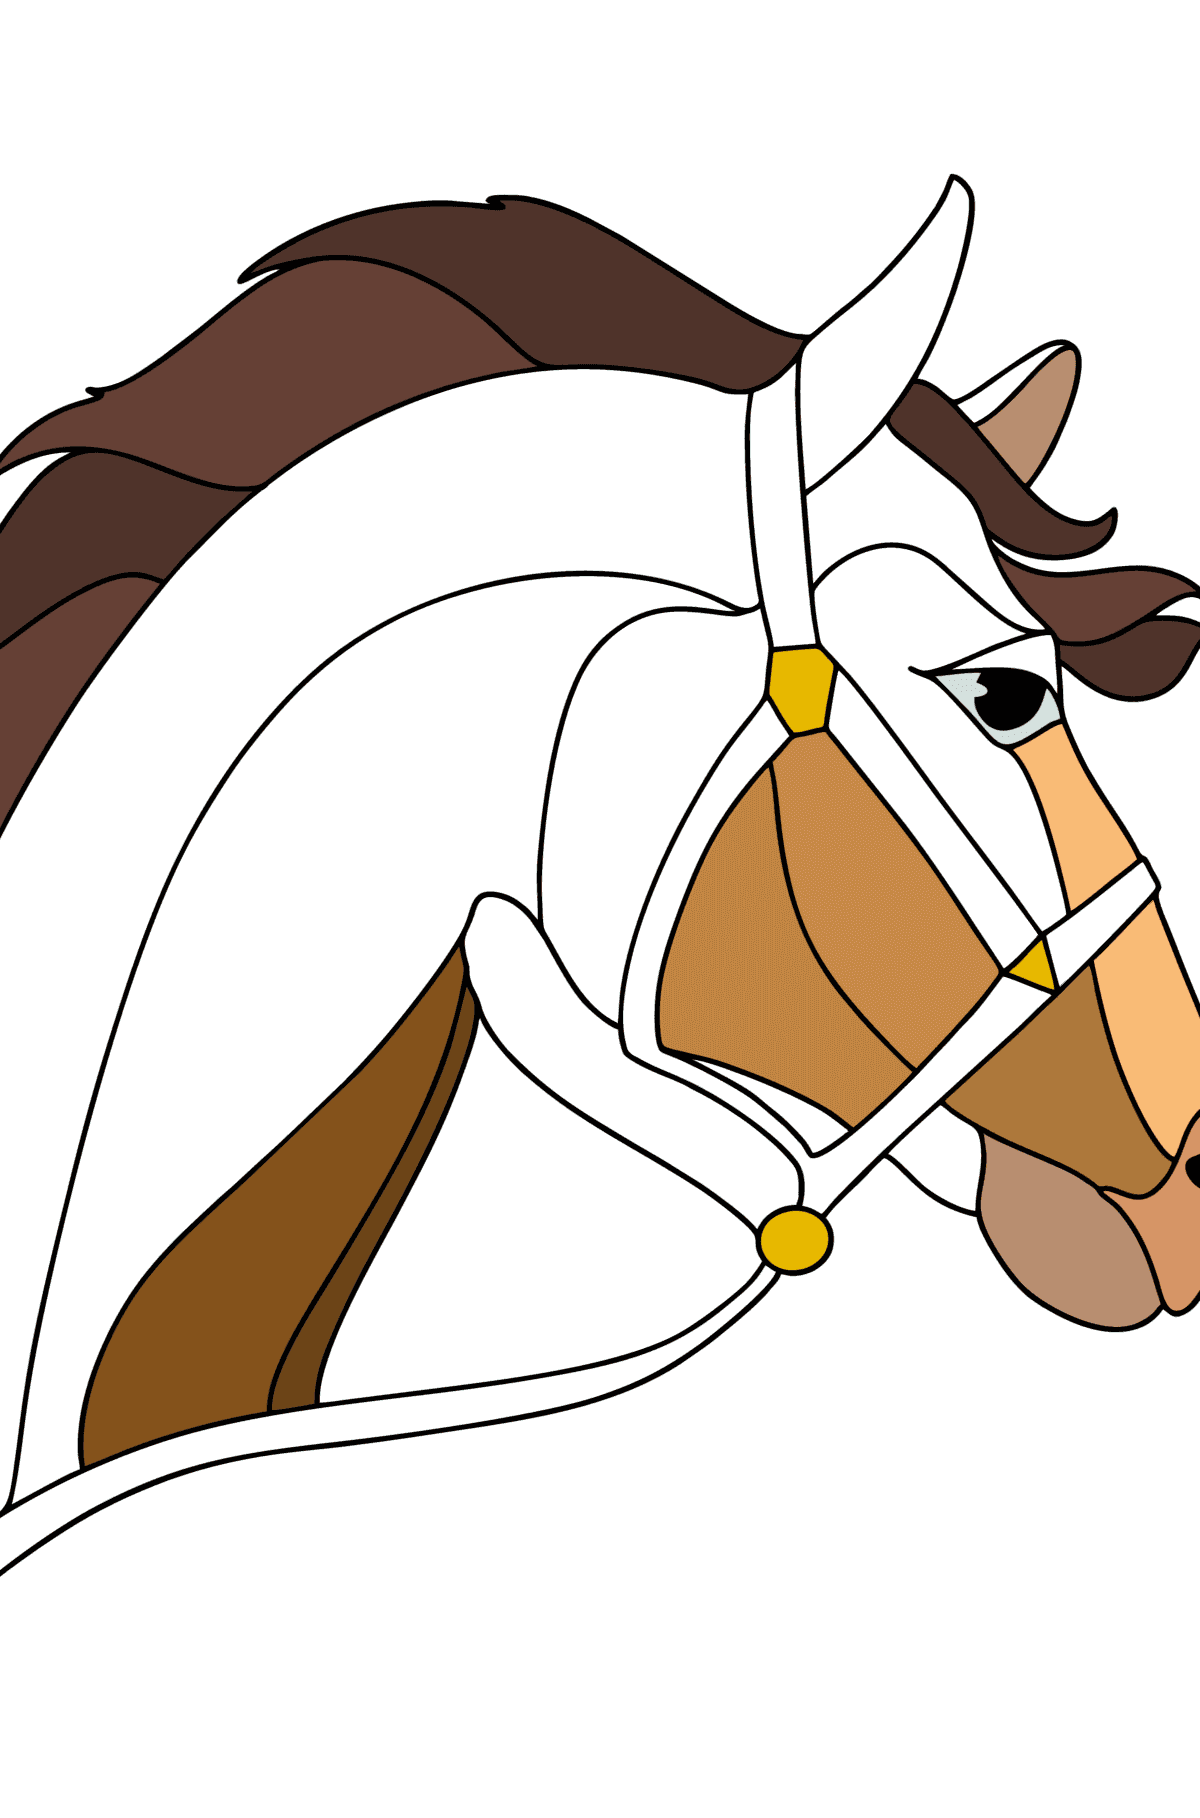 Tegning til farvning Hestehoved - Tegninger til farvelægning for børn